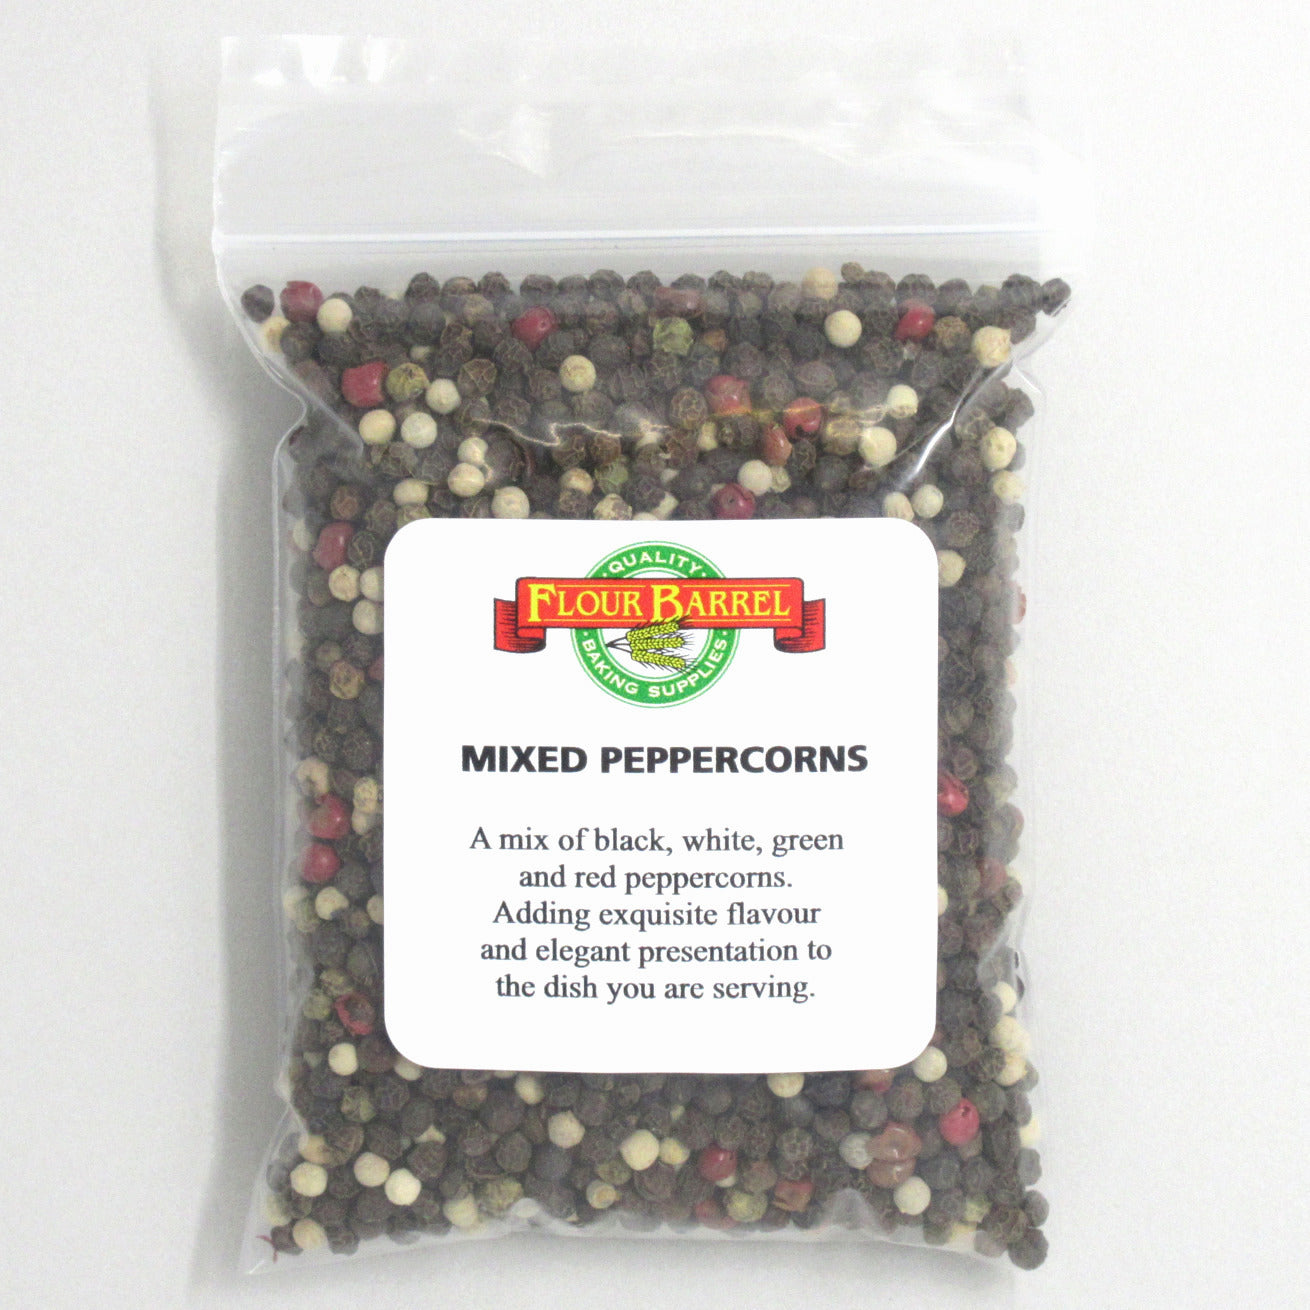 Flour Barrel product image - Mixed Peppercorns